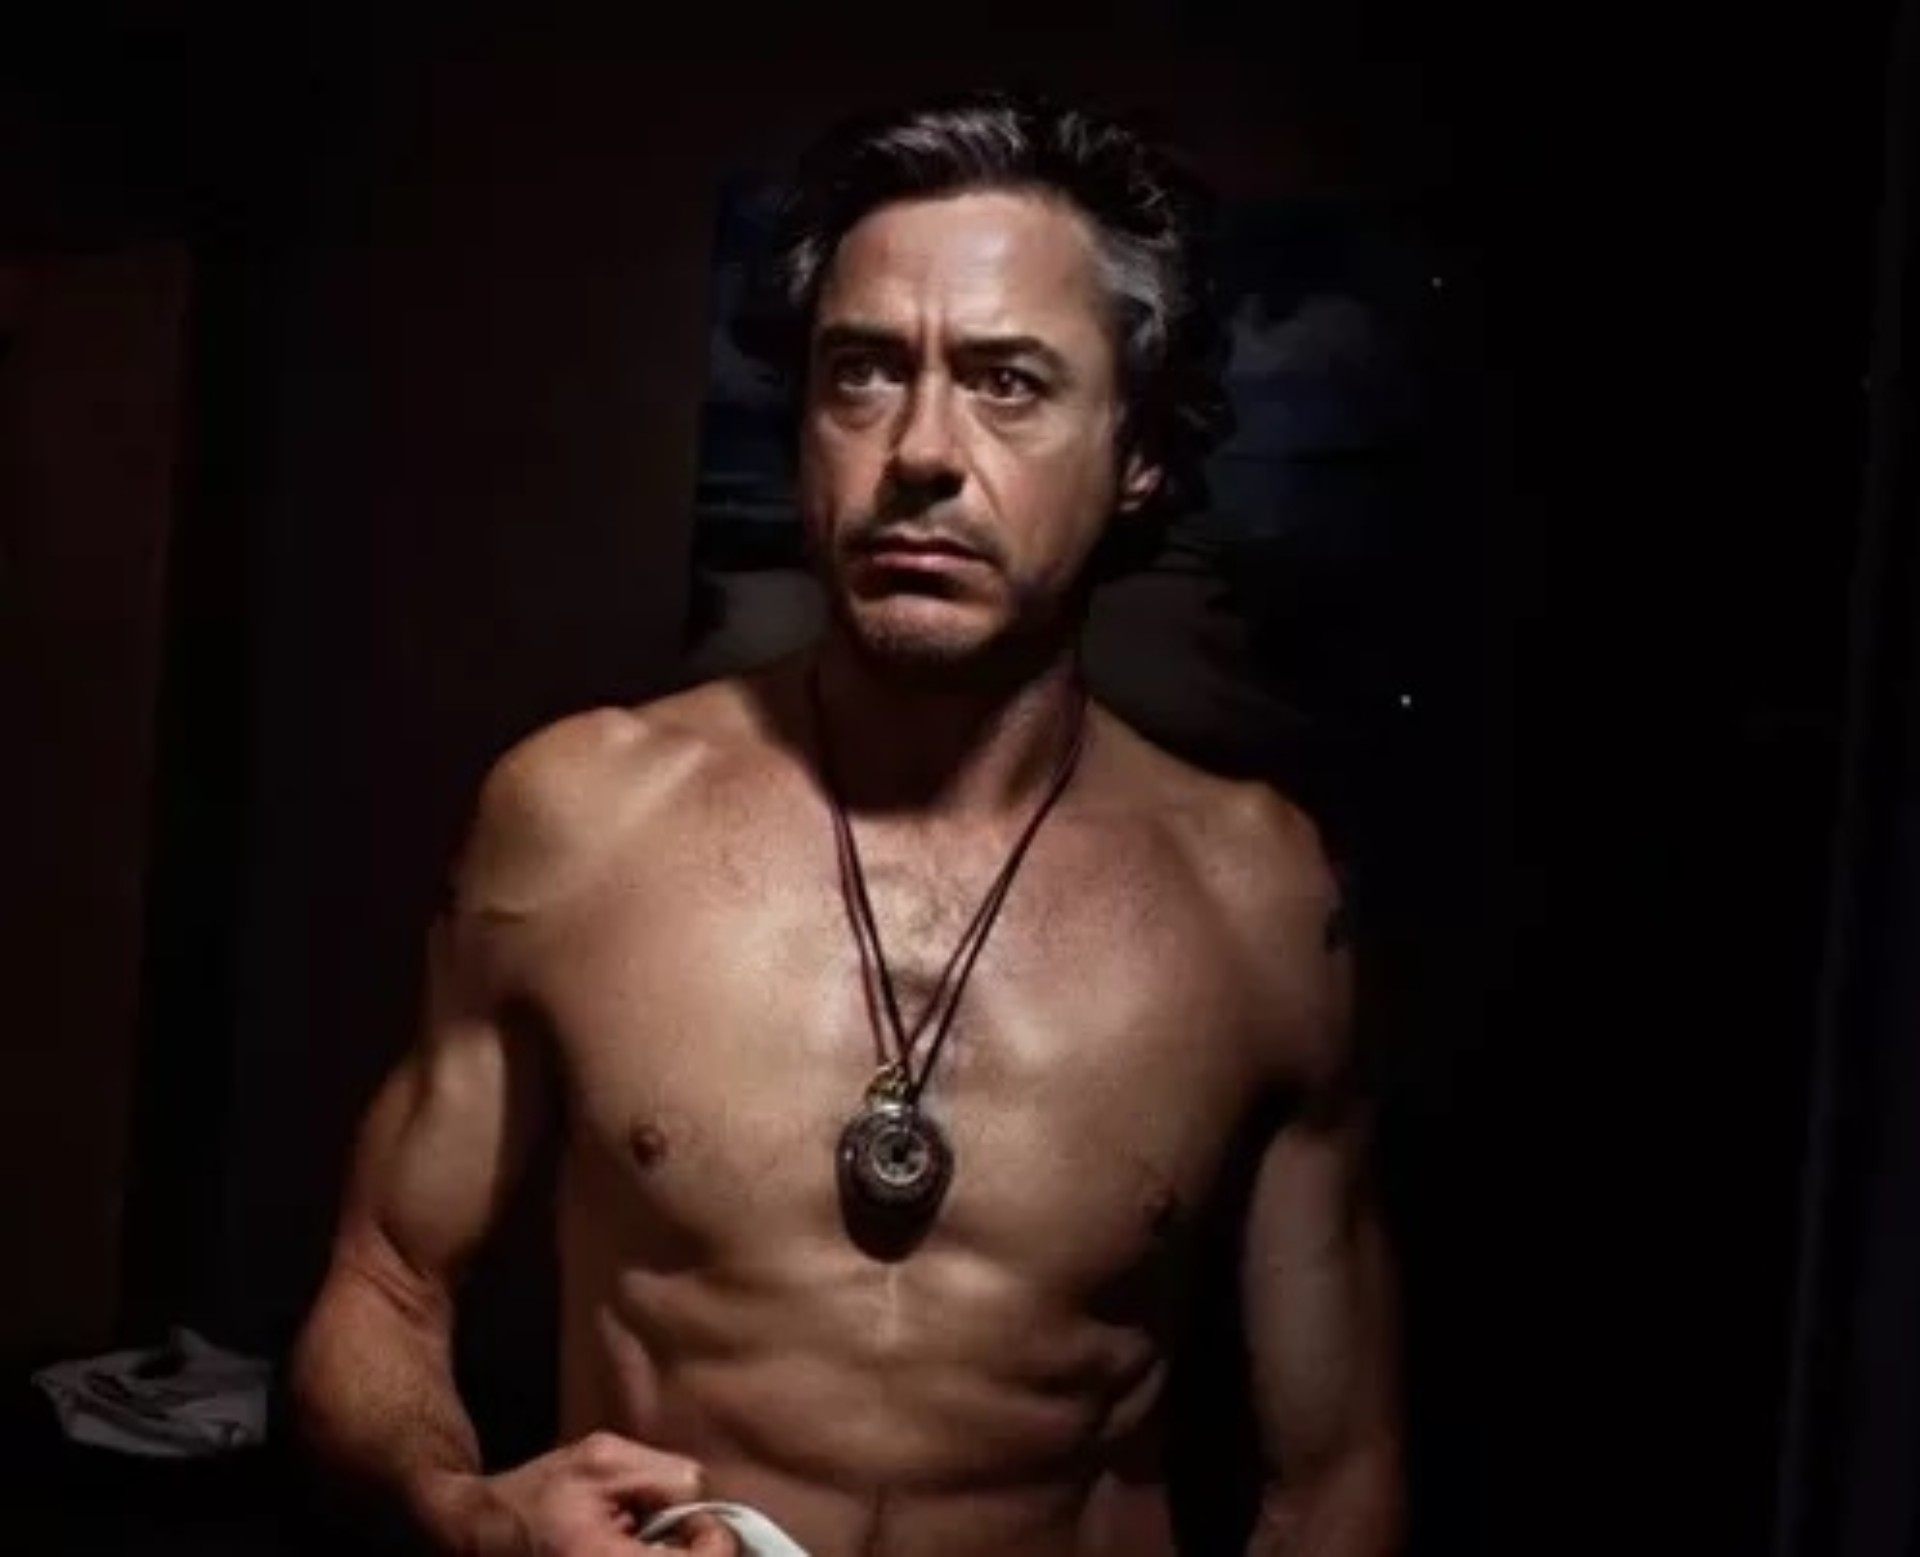 Robert Downey Jr - Iron Man.